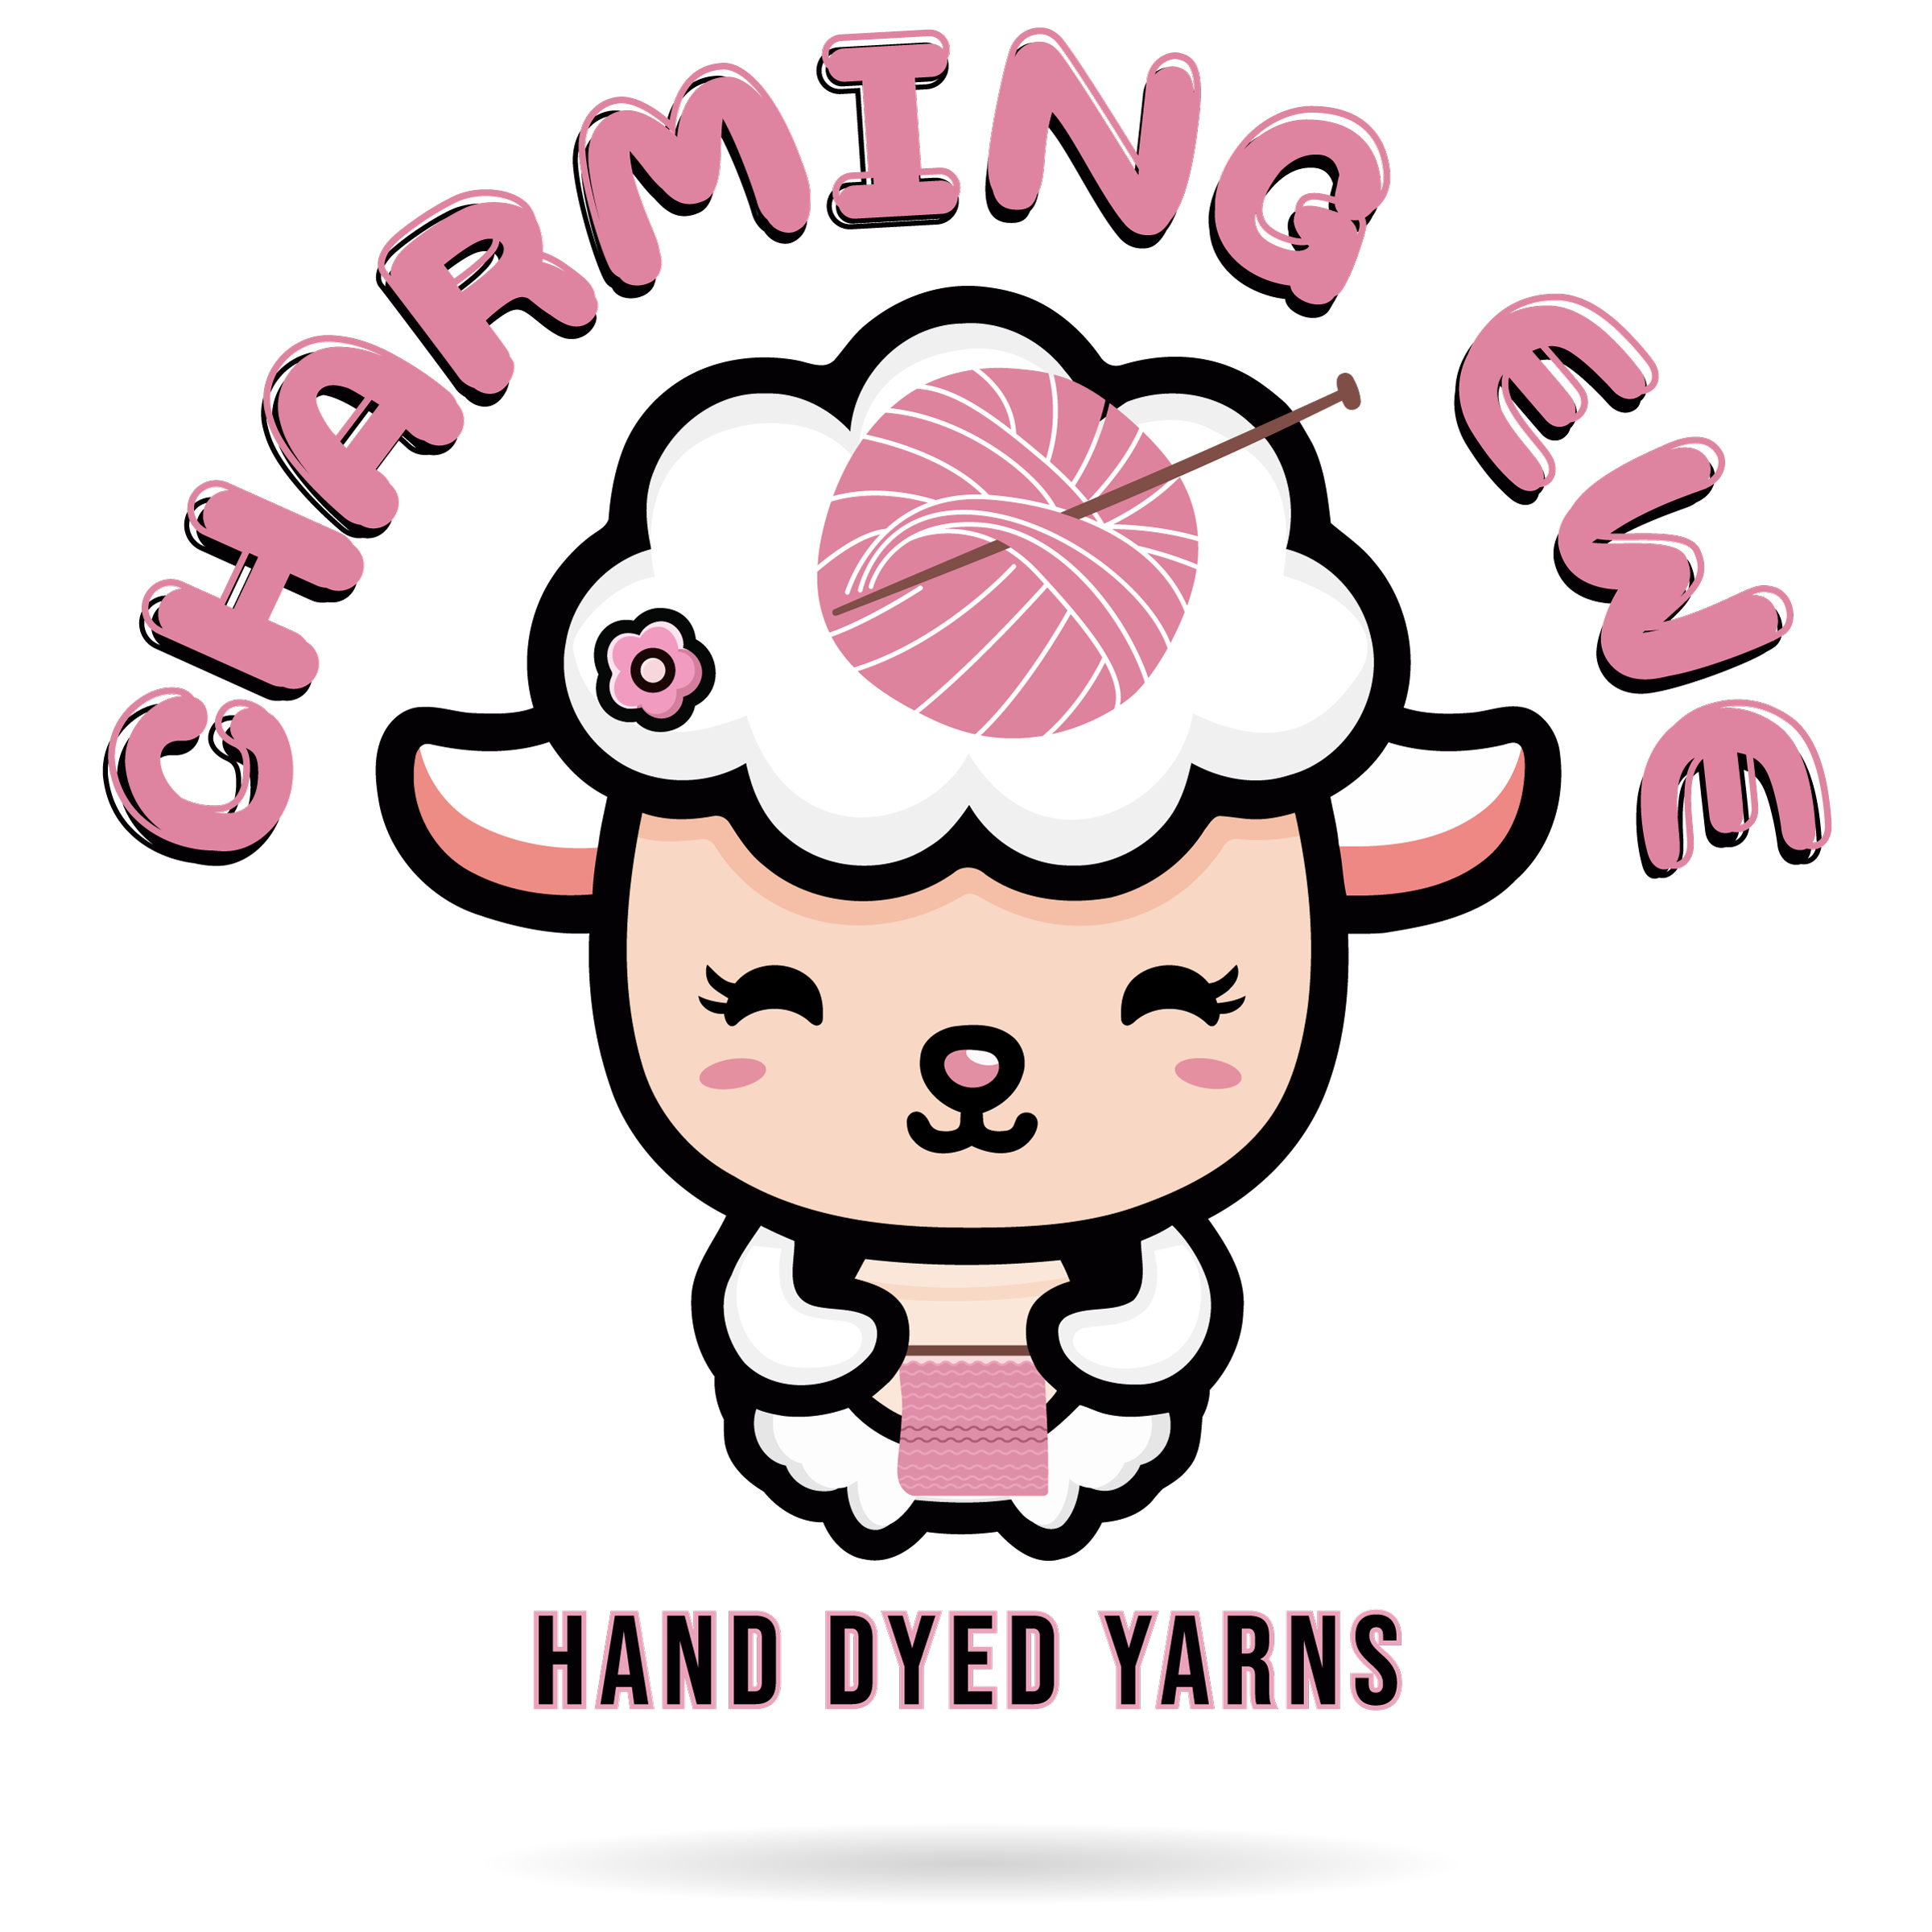 Charming Ewe logo